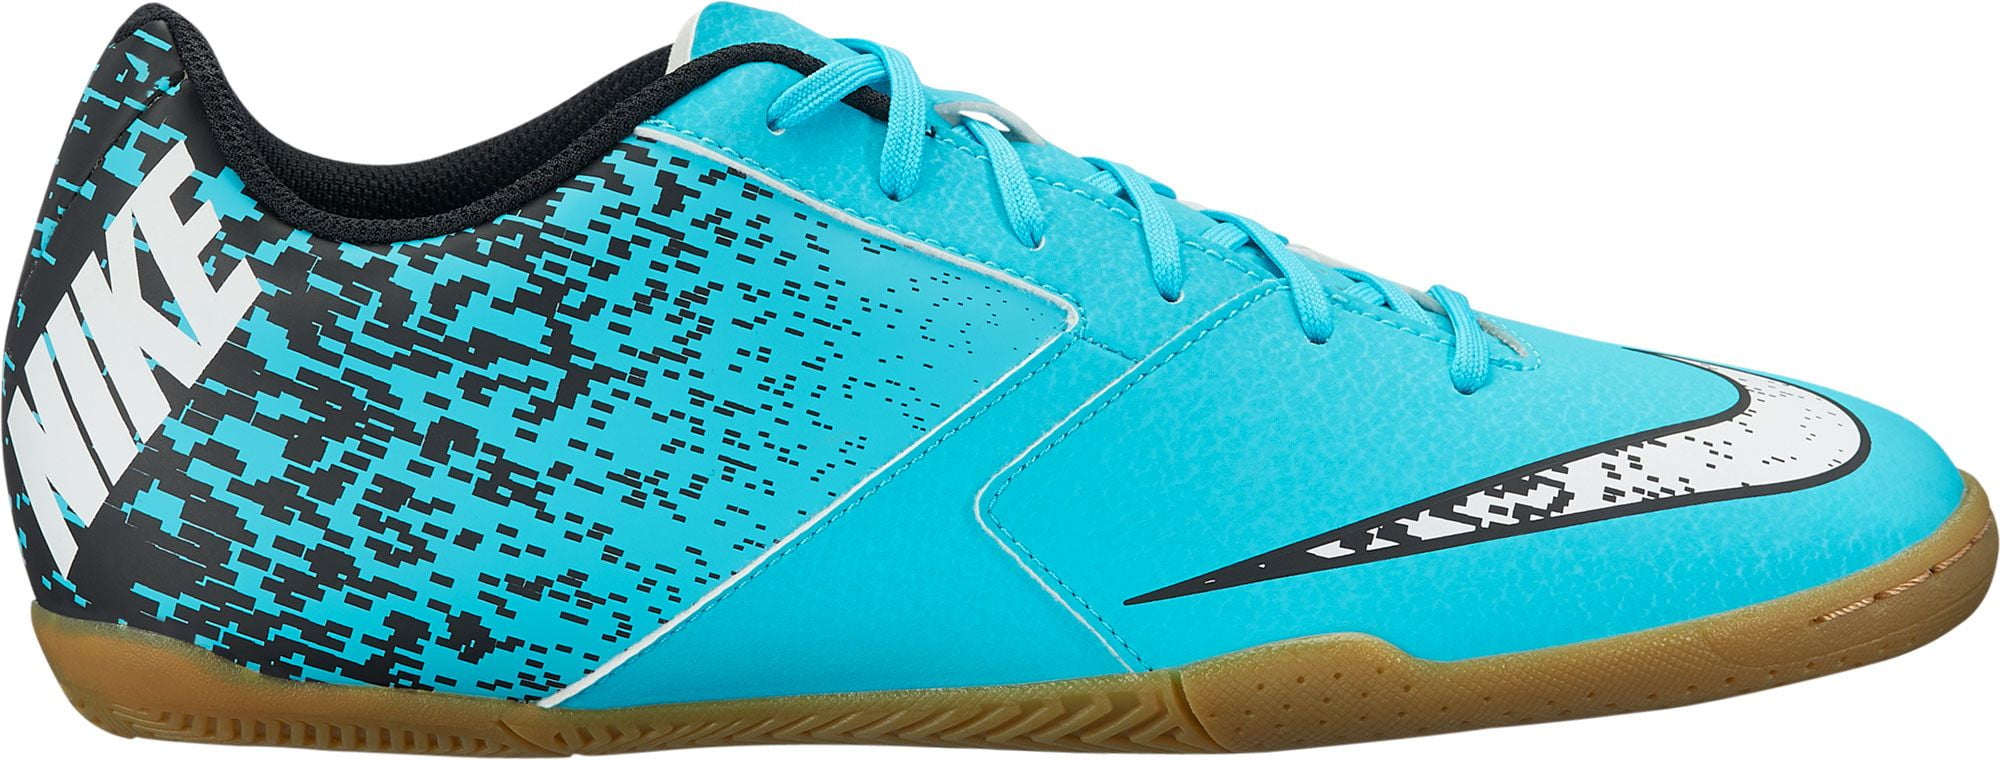 Nike BombaX Indoor Soccer Shoes - Walmart.com - Walmart.com